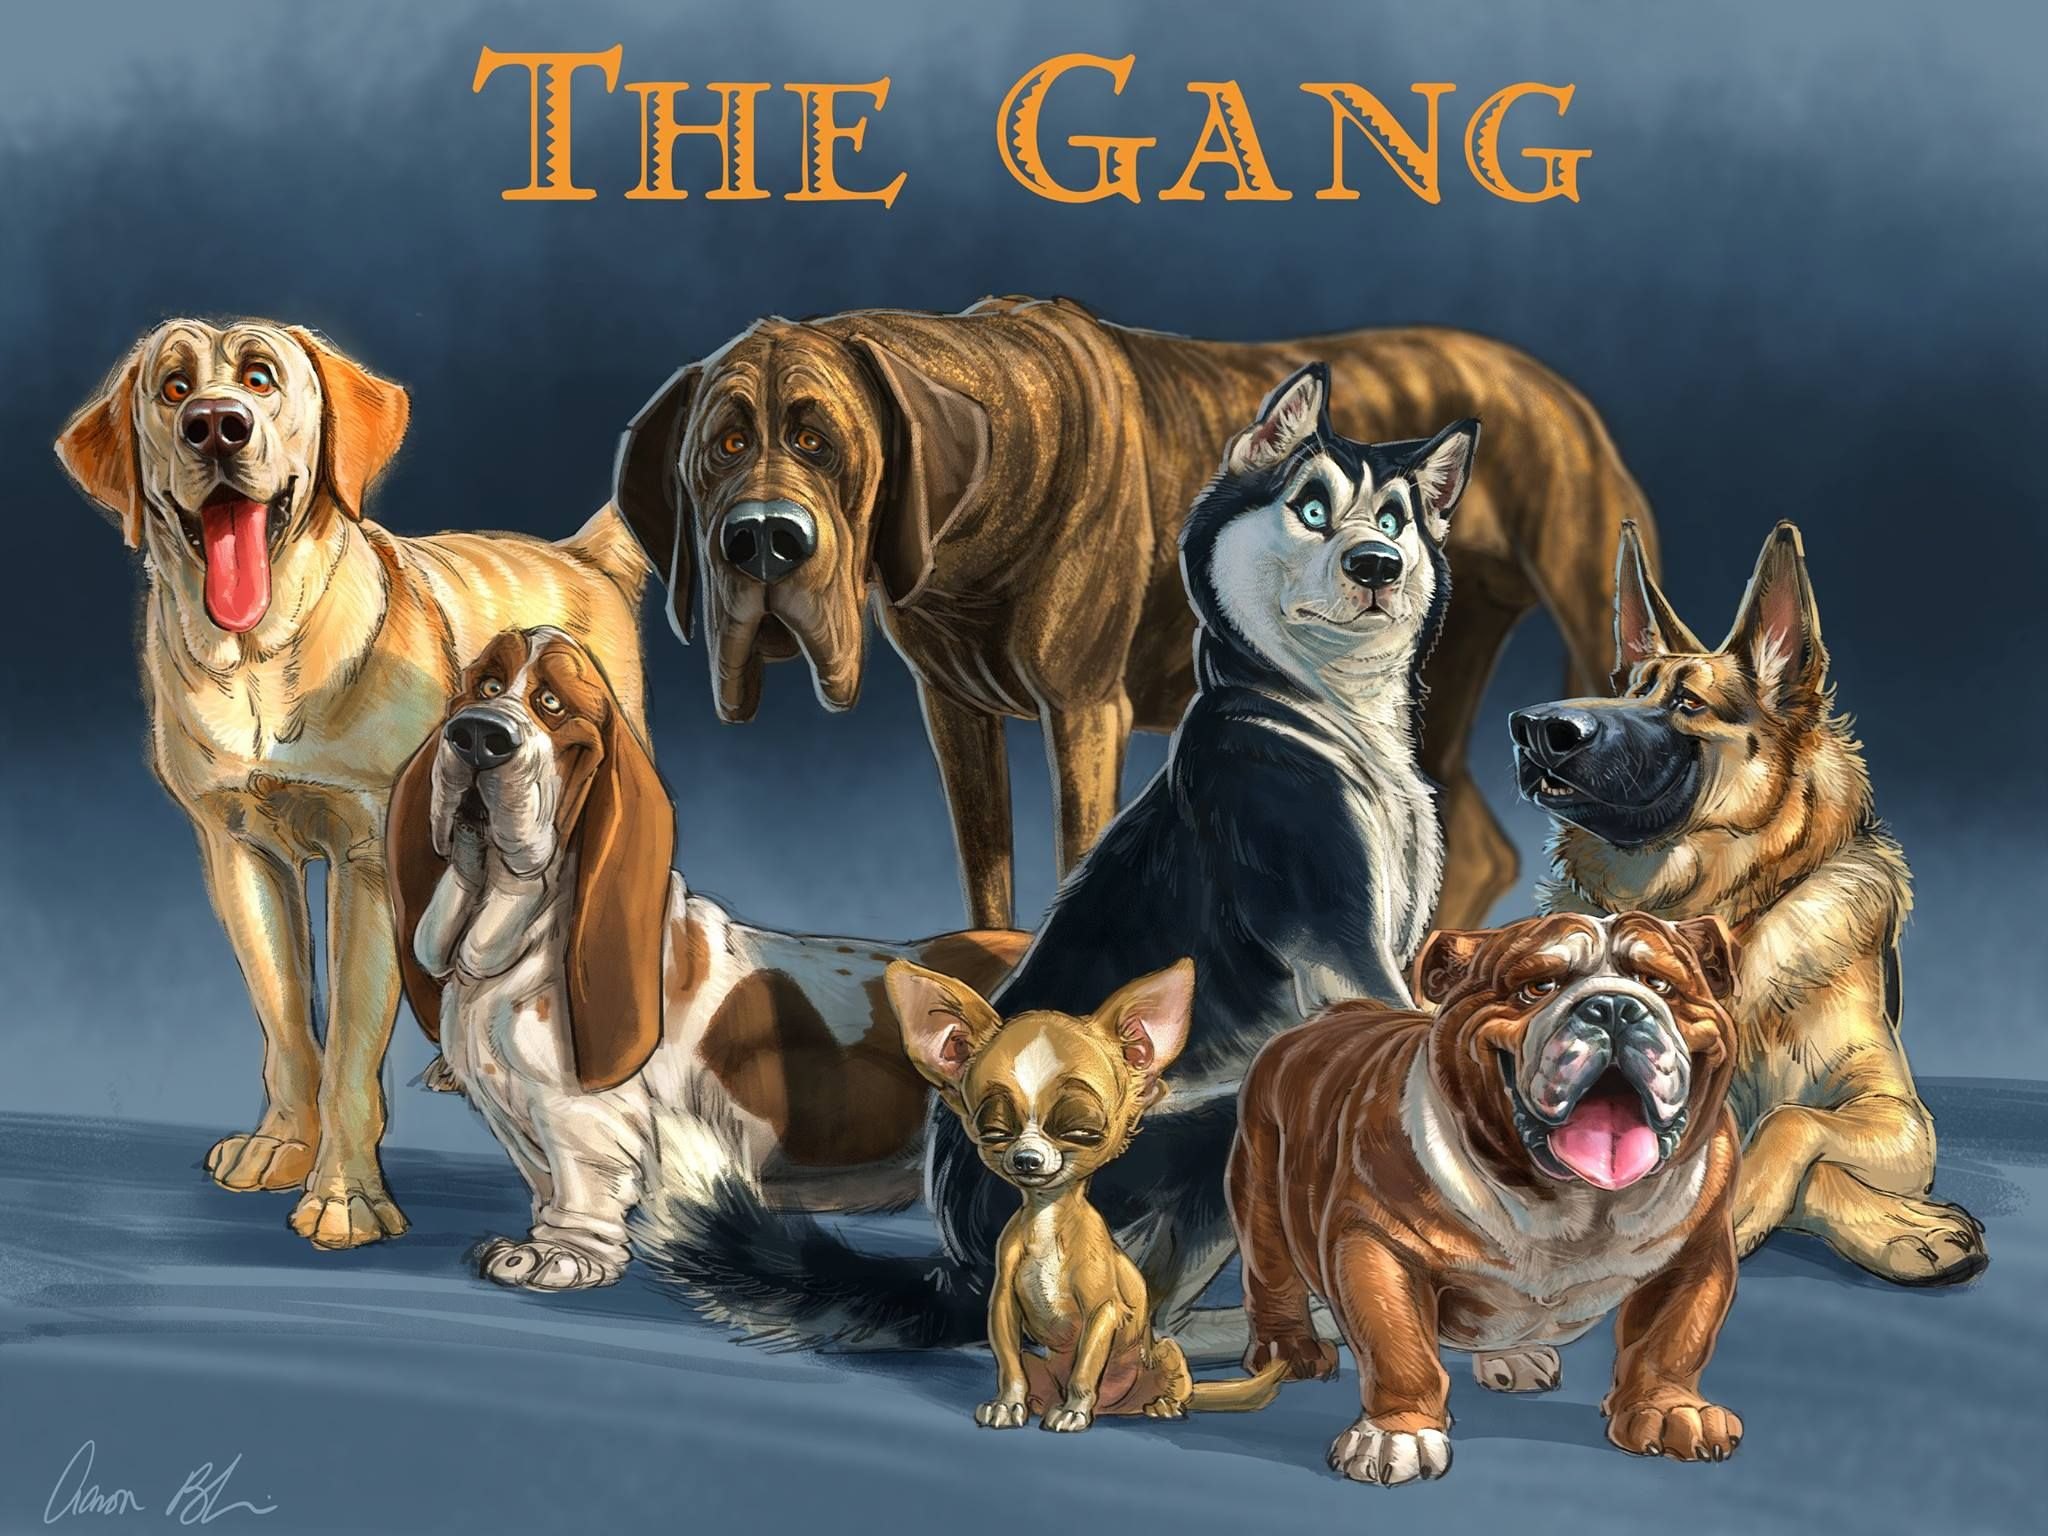 Иллюстрации собак разных пород